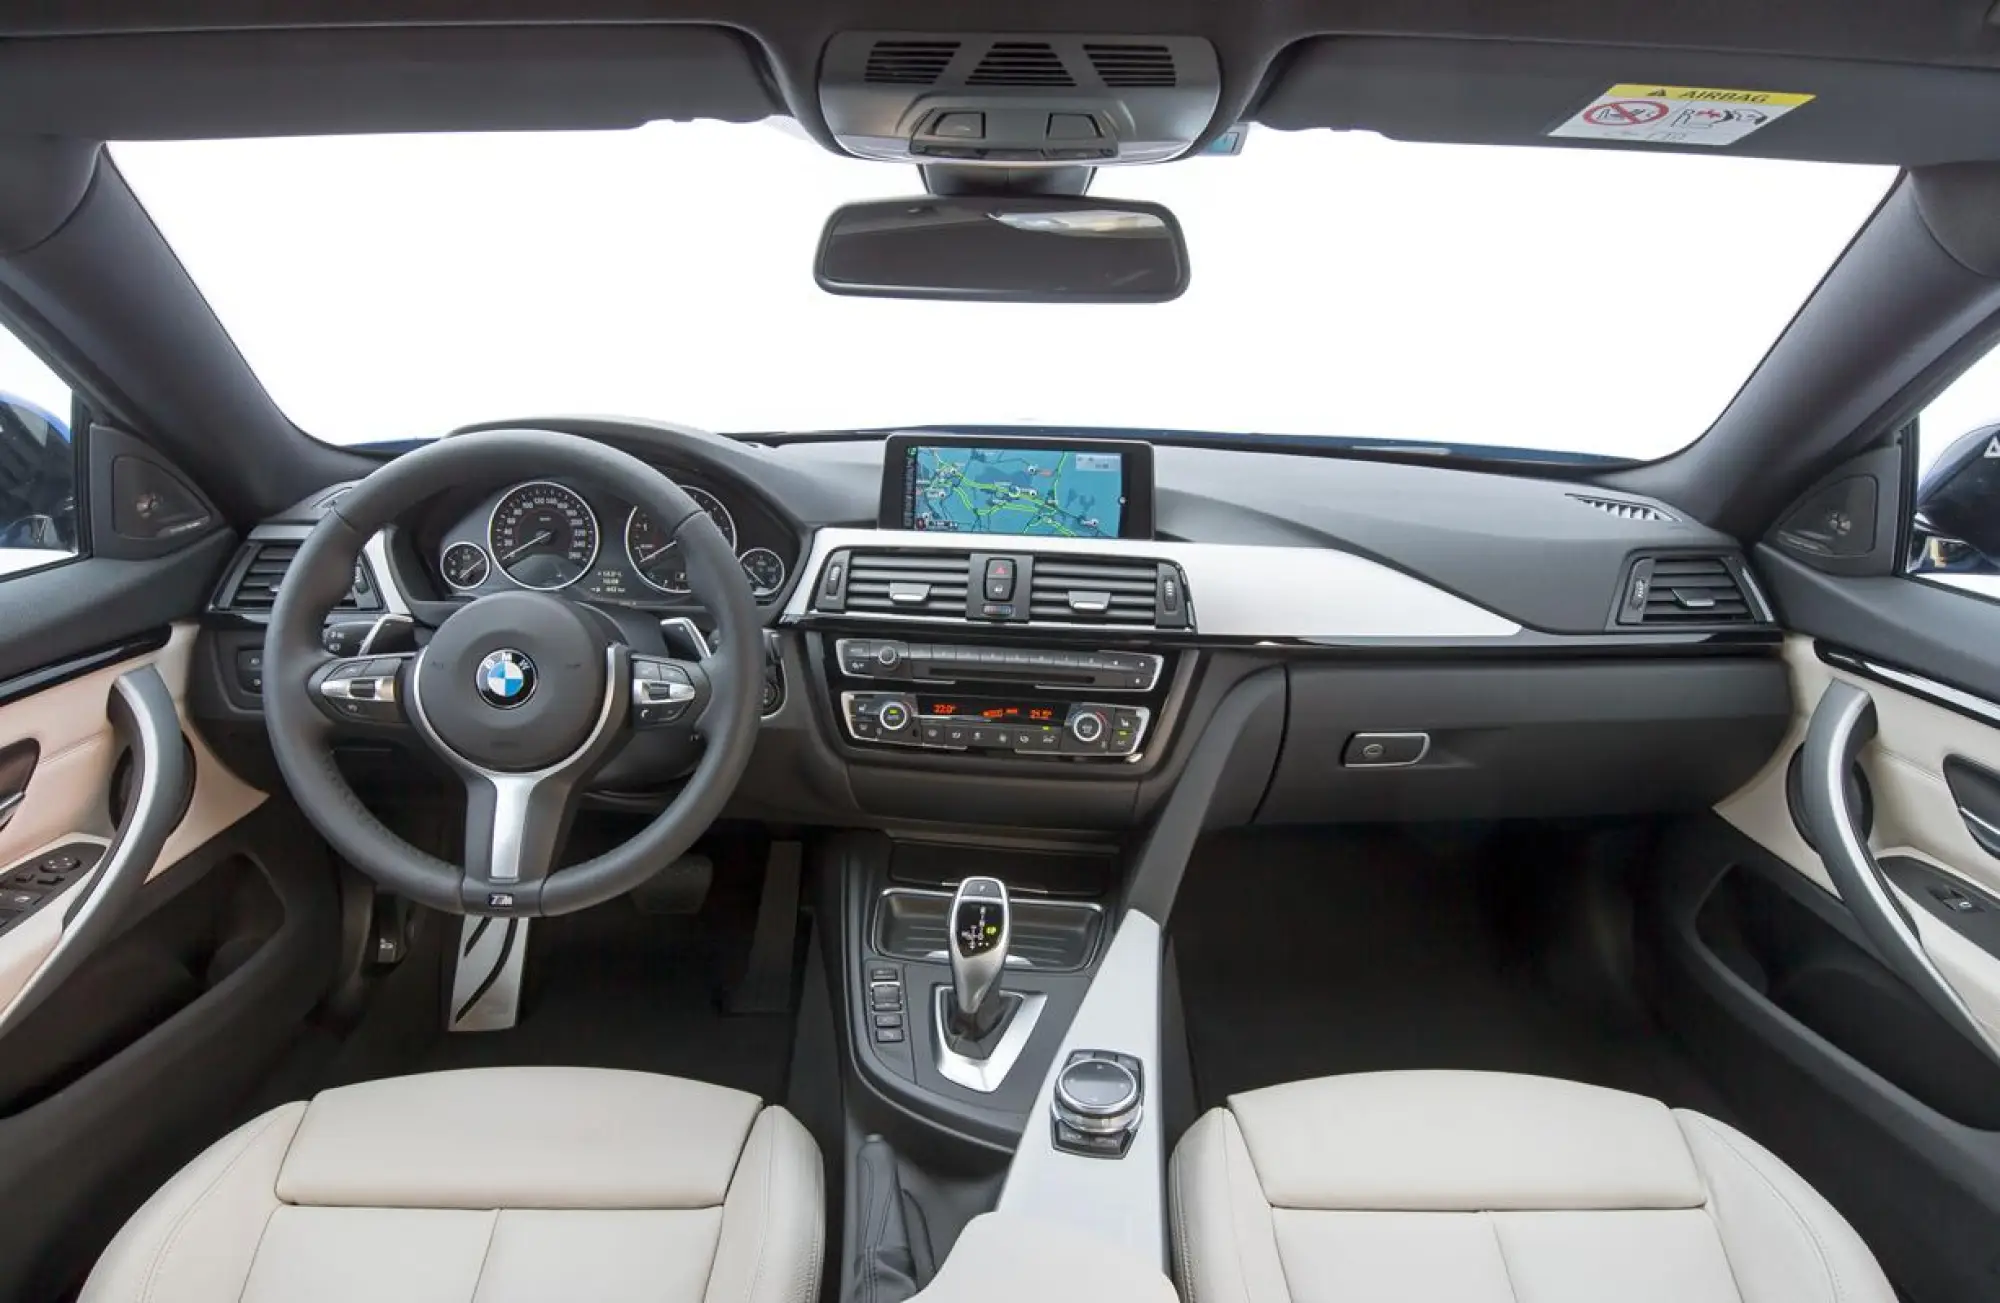 BMW Serie 4 Gran Coupe - Nuove foto ufficiali - 100